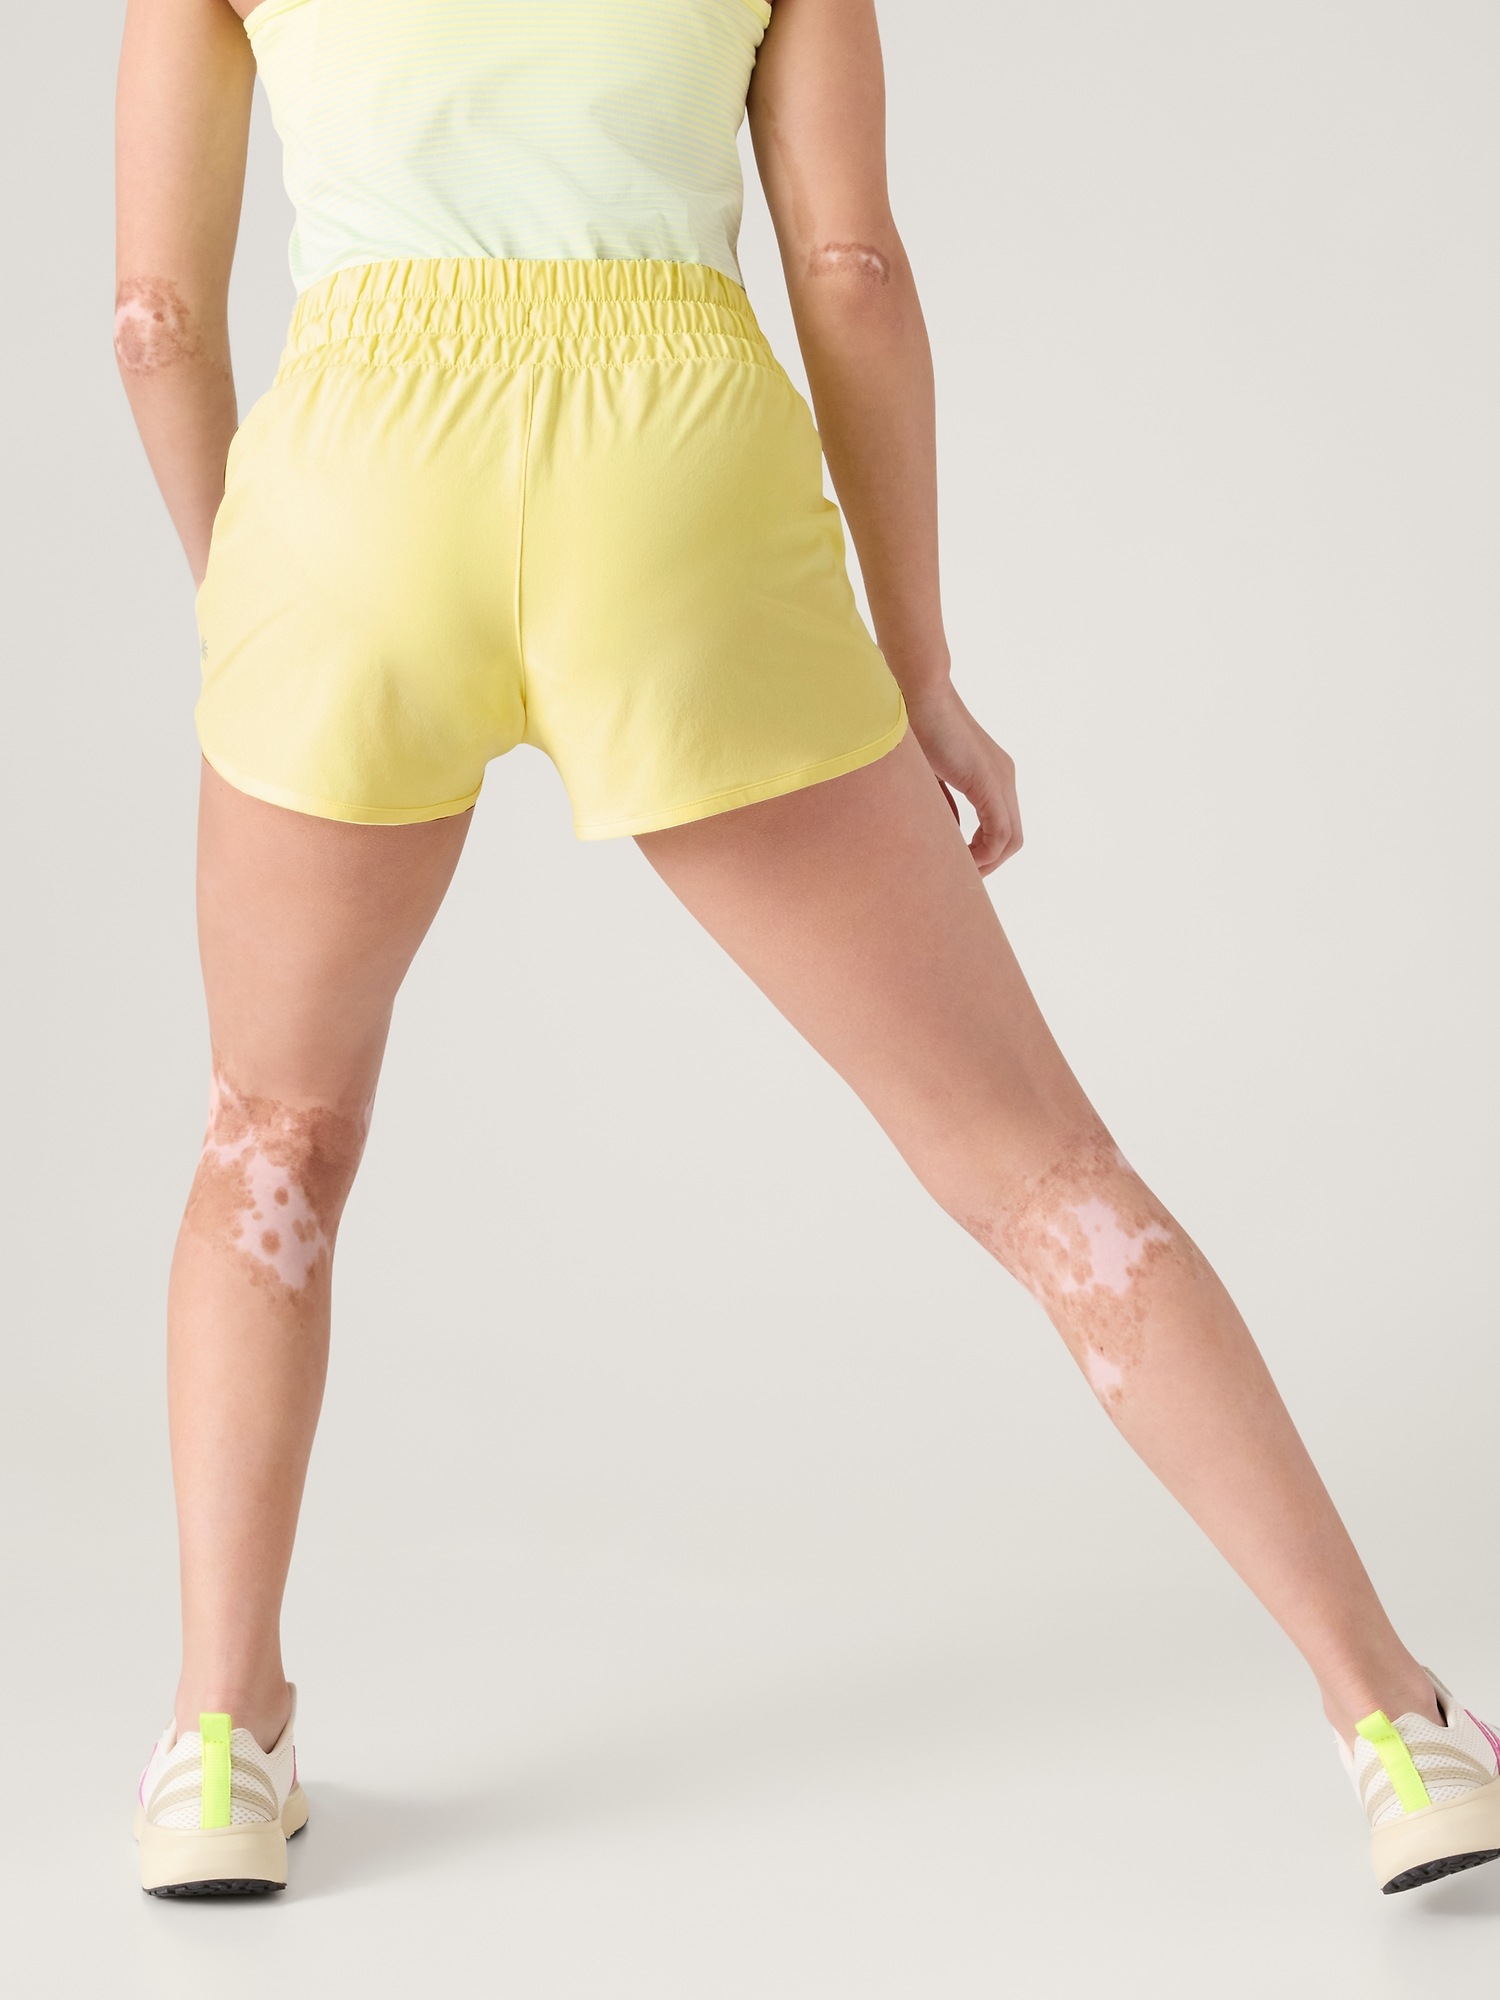 Bright Neon Yellow 2.5 inch Inseam Spandex Compression Shorts